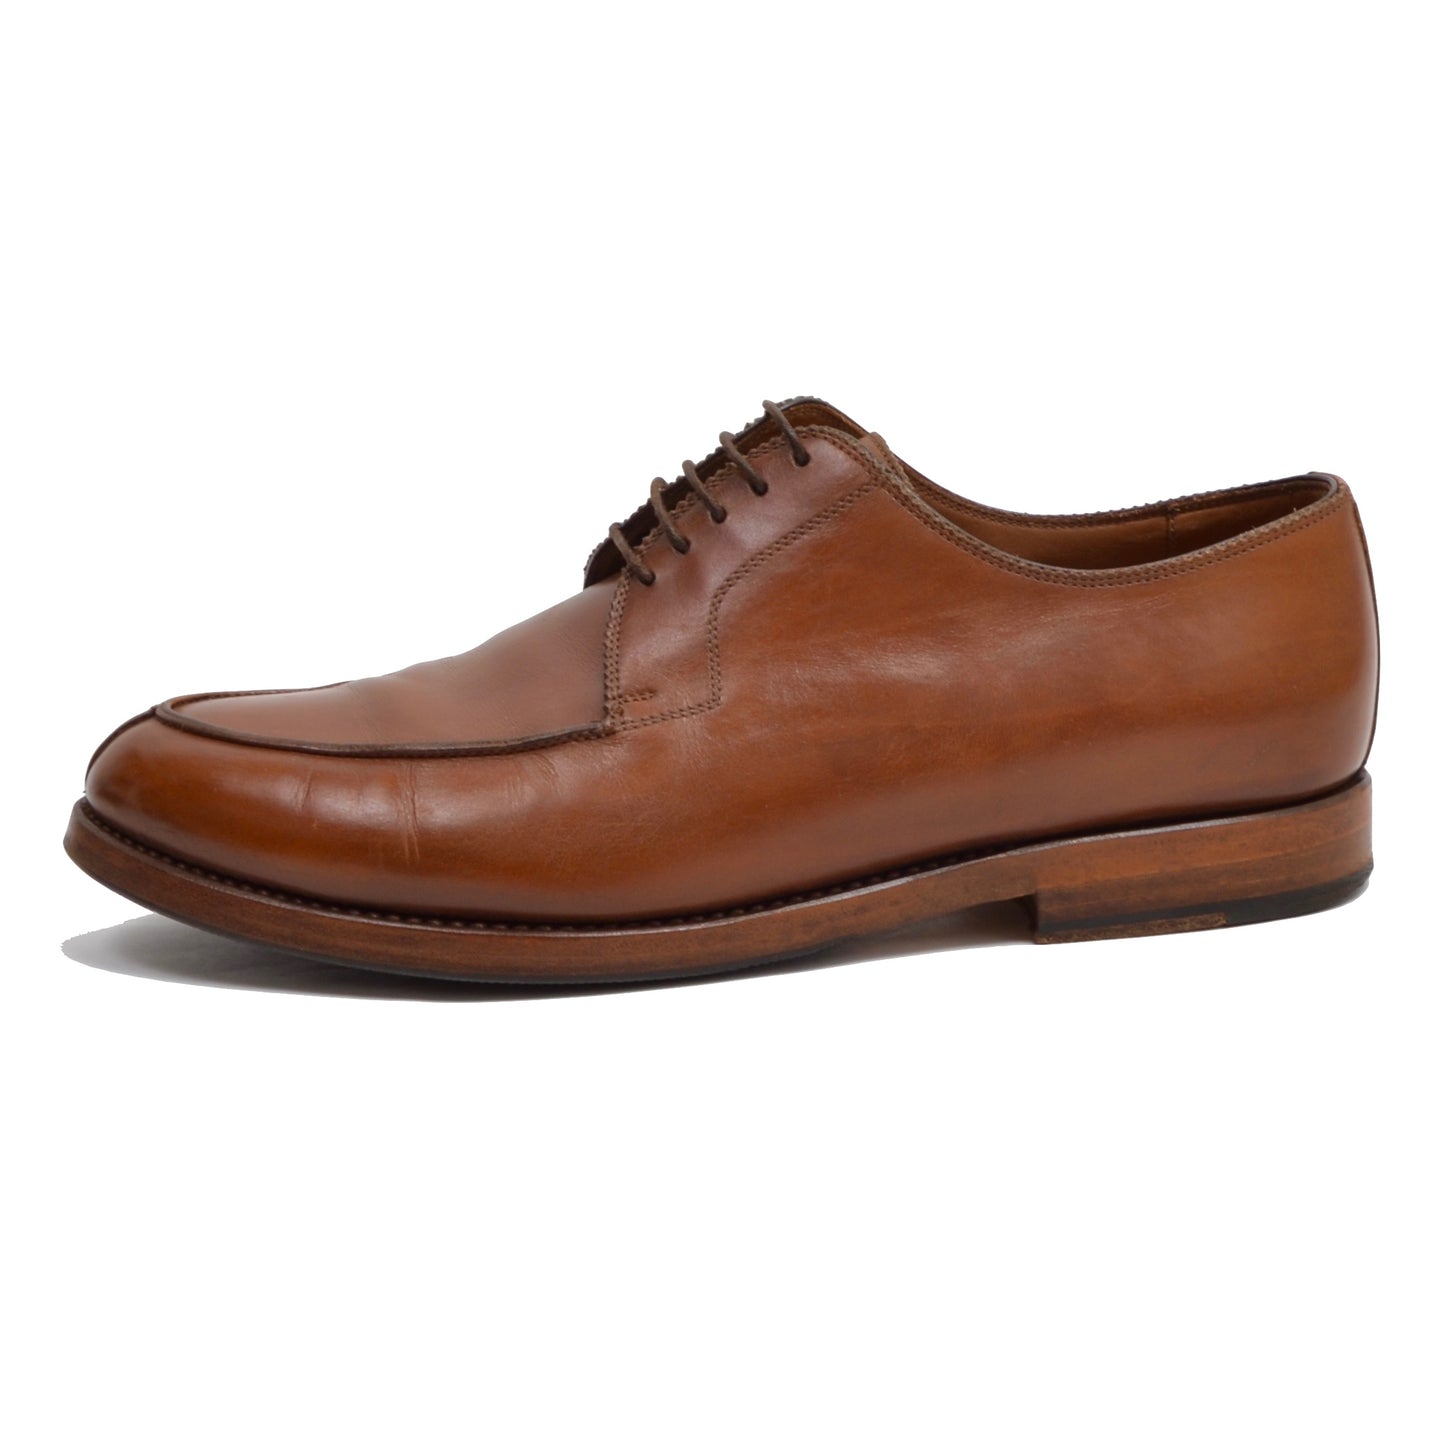 László Sacher Norweger Shoes Size 41.5 - Cognac